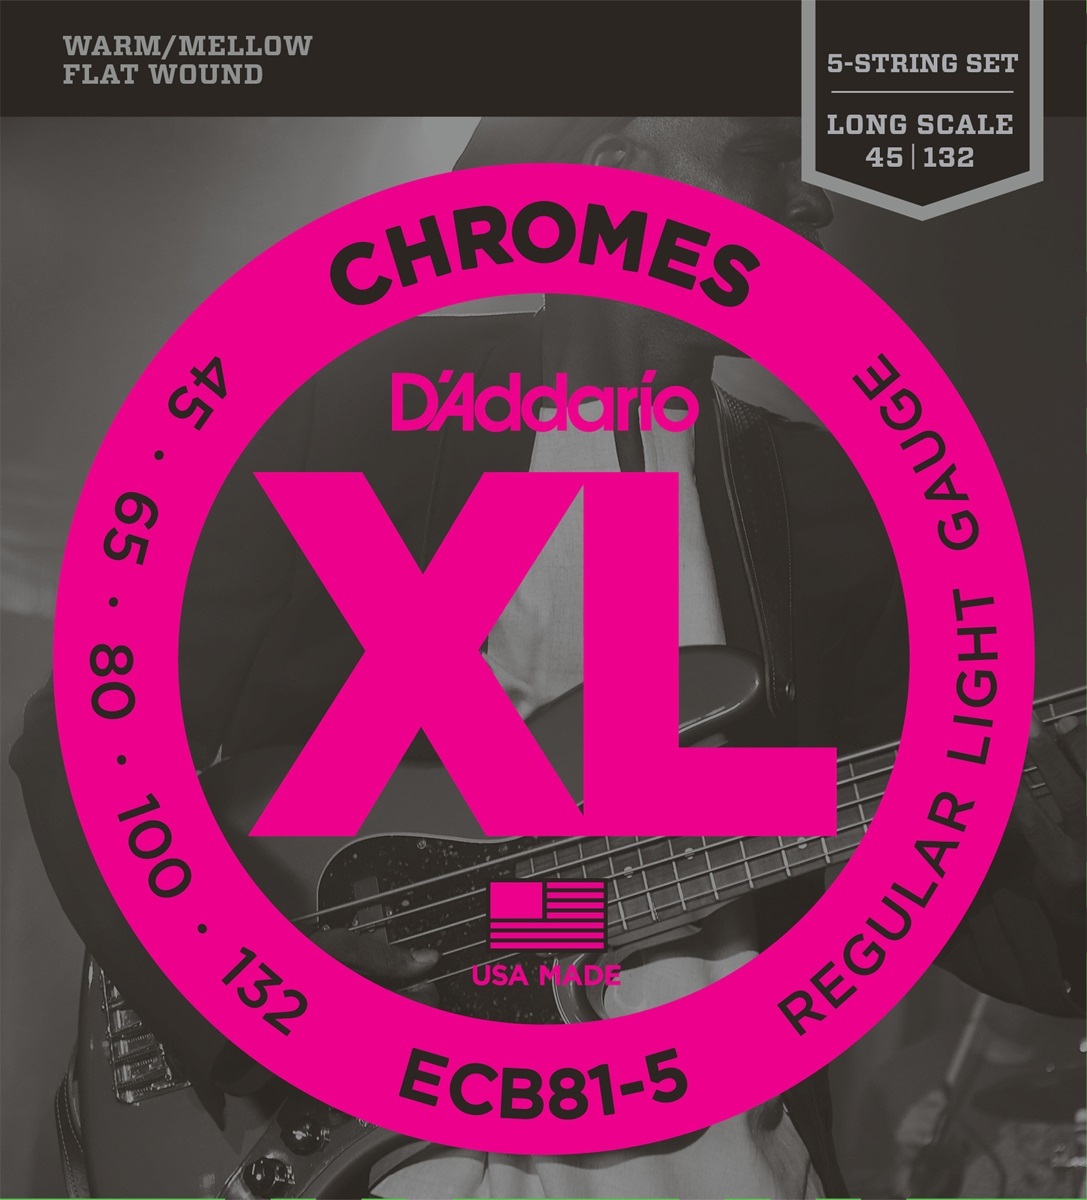 D'addario Jeu De 5 Cordes Basse Elec. 5c Chromes Long Scale 045.132 Ecb81.5 - Cuerdas para bajo eléctrico - Main picture